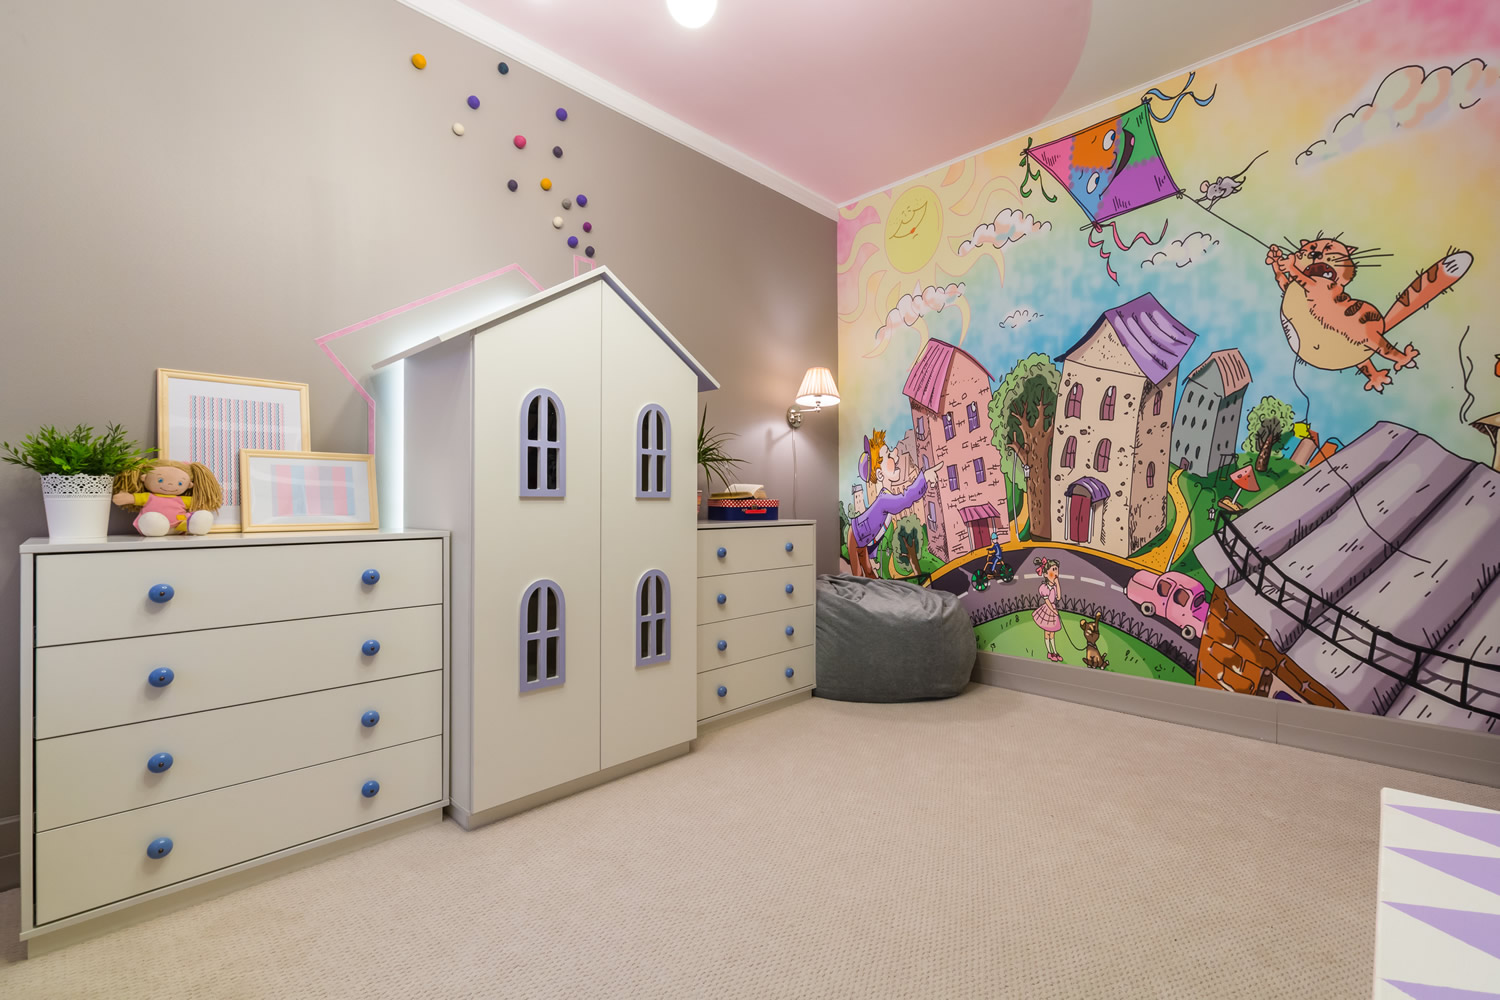 Наклейки на стену в детскую комнату: преимущества декора, материалы и совет по размещению